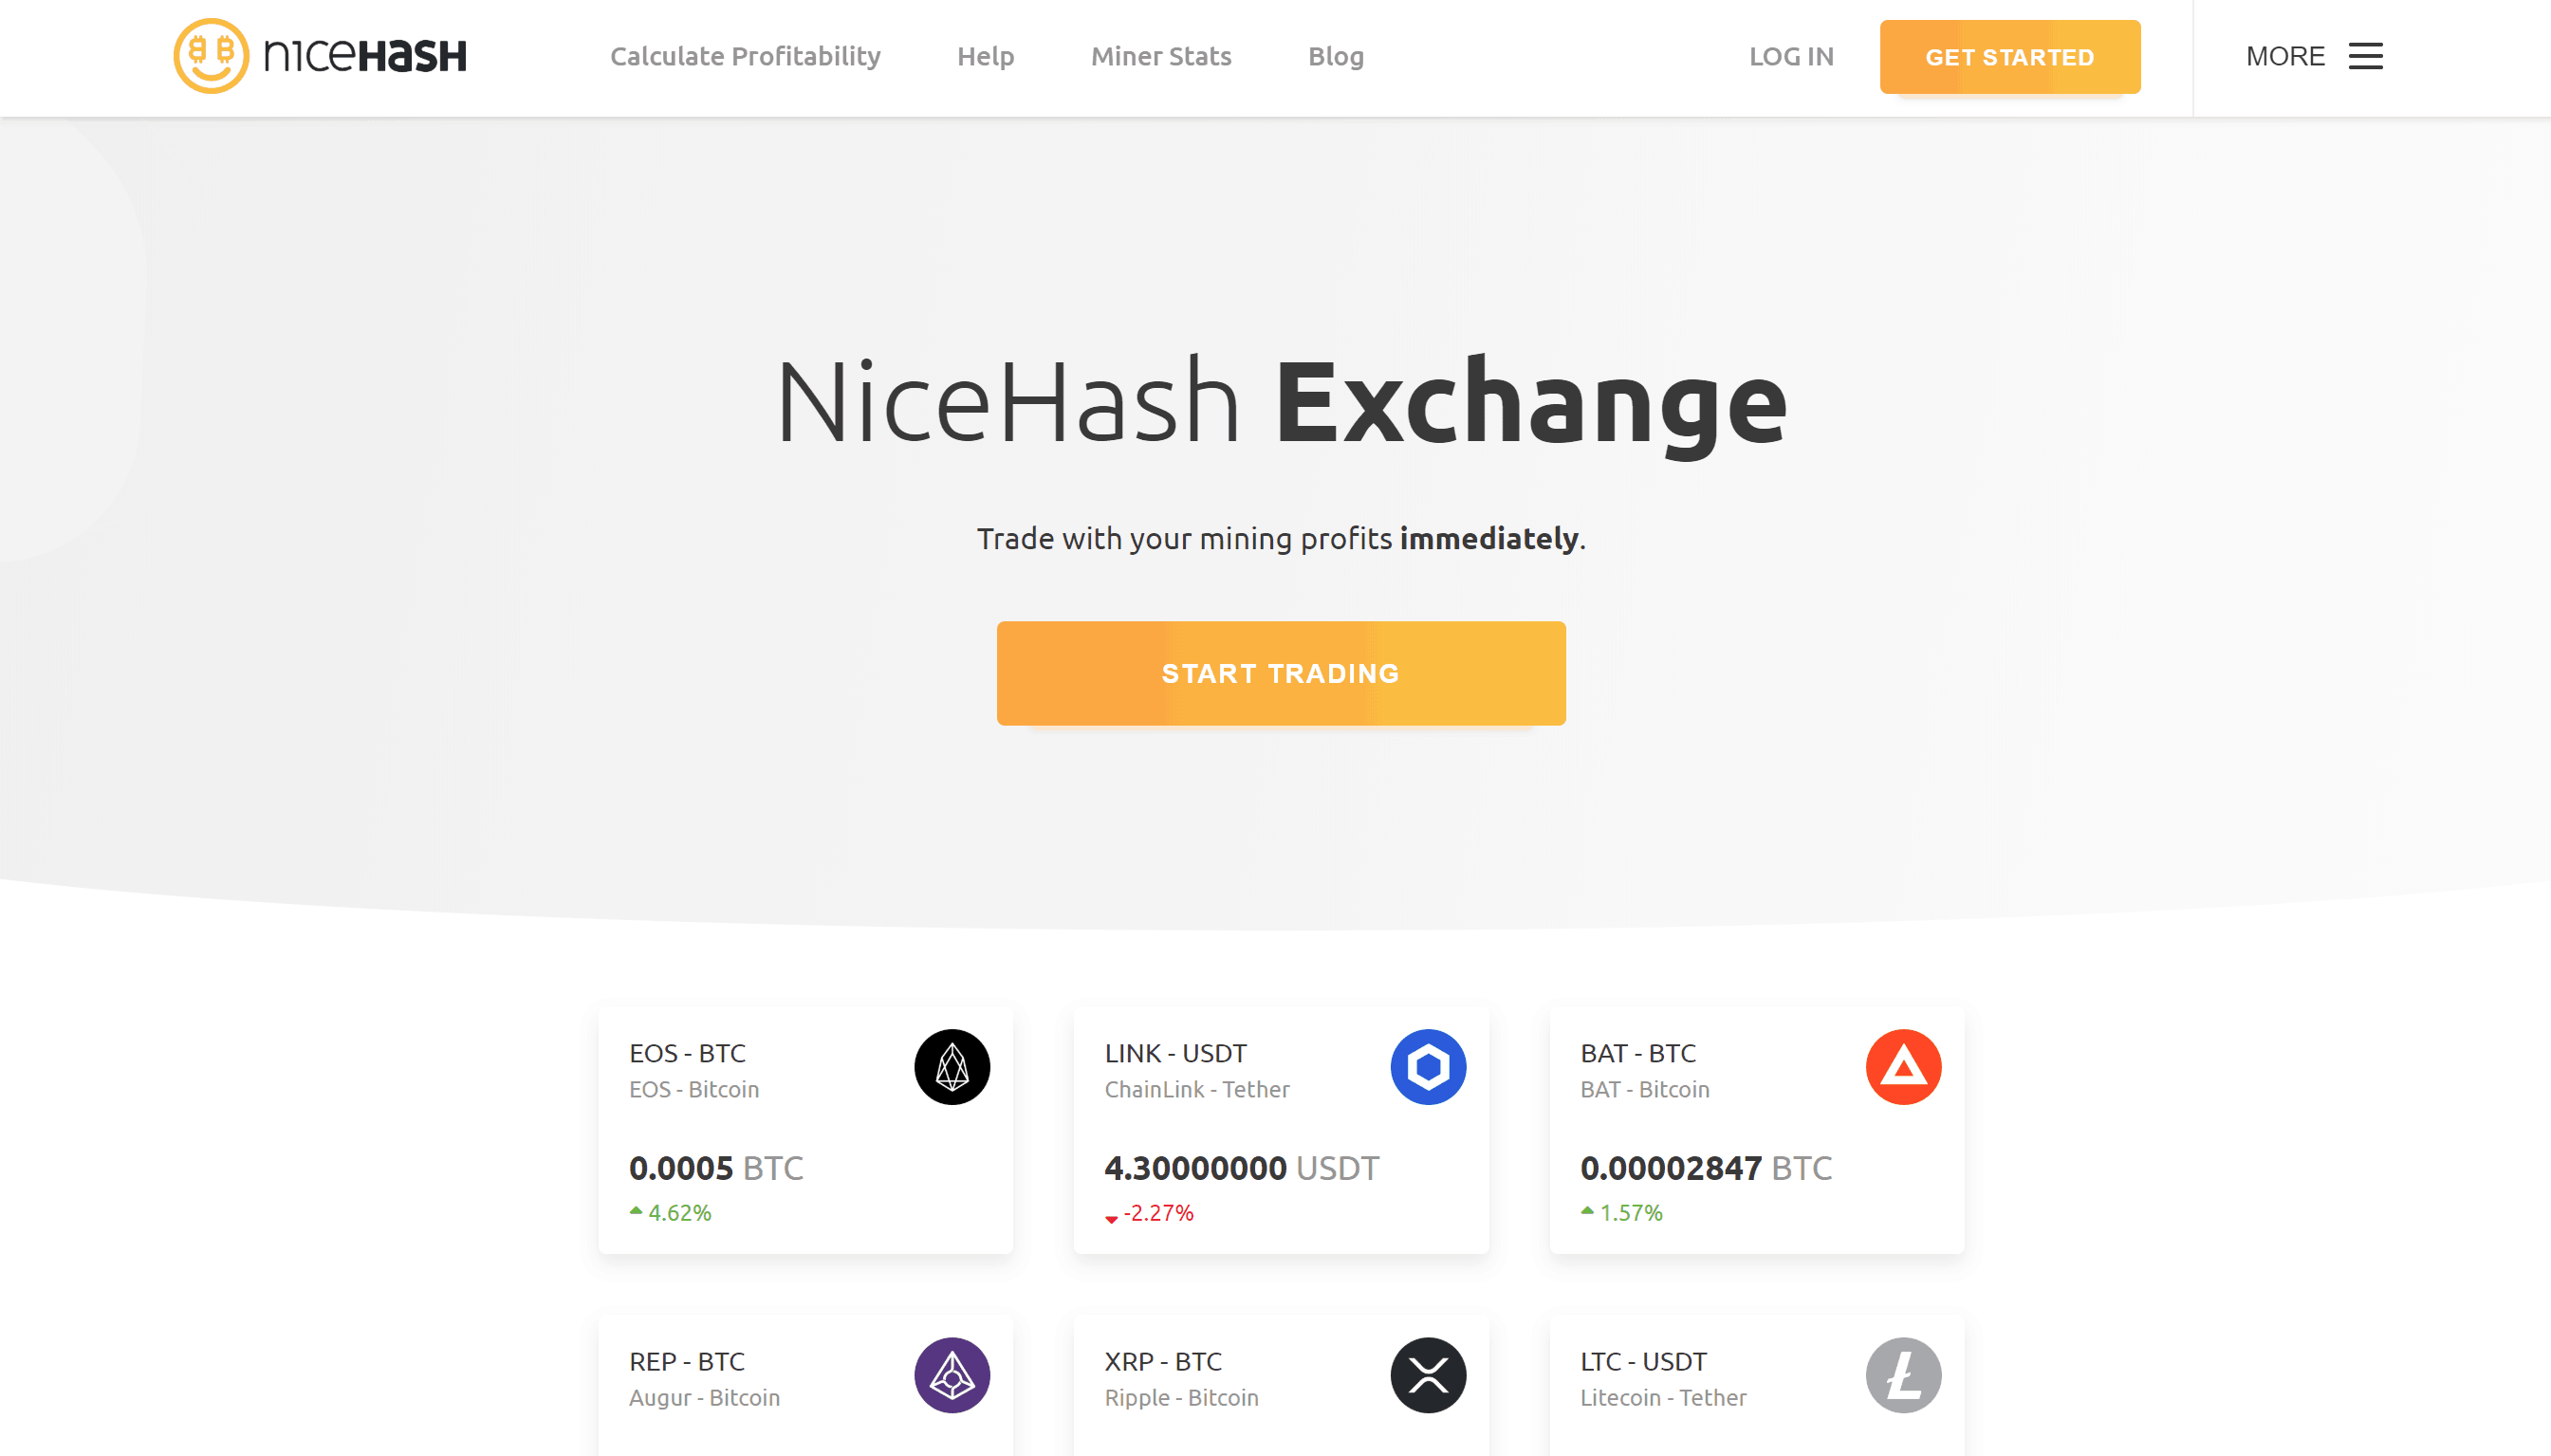 NiceHash homepage